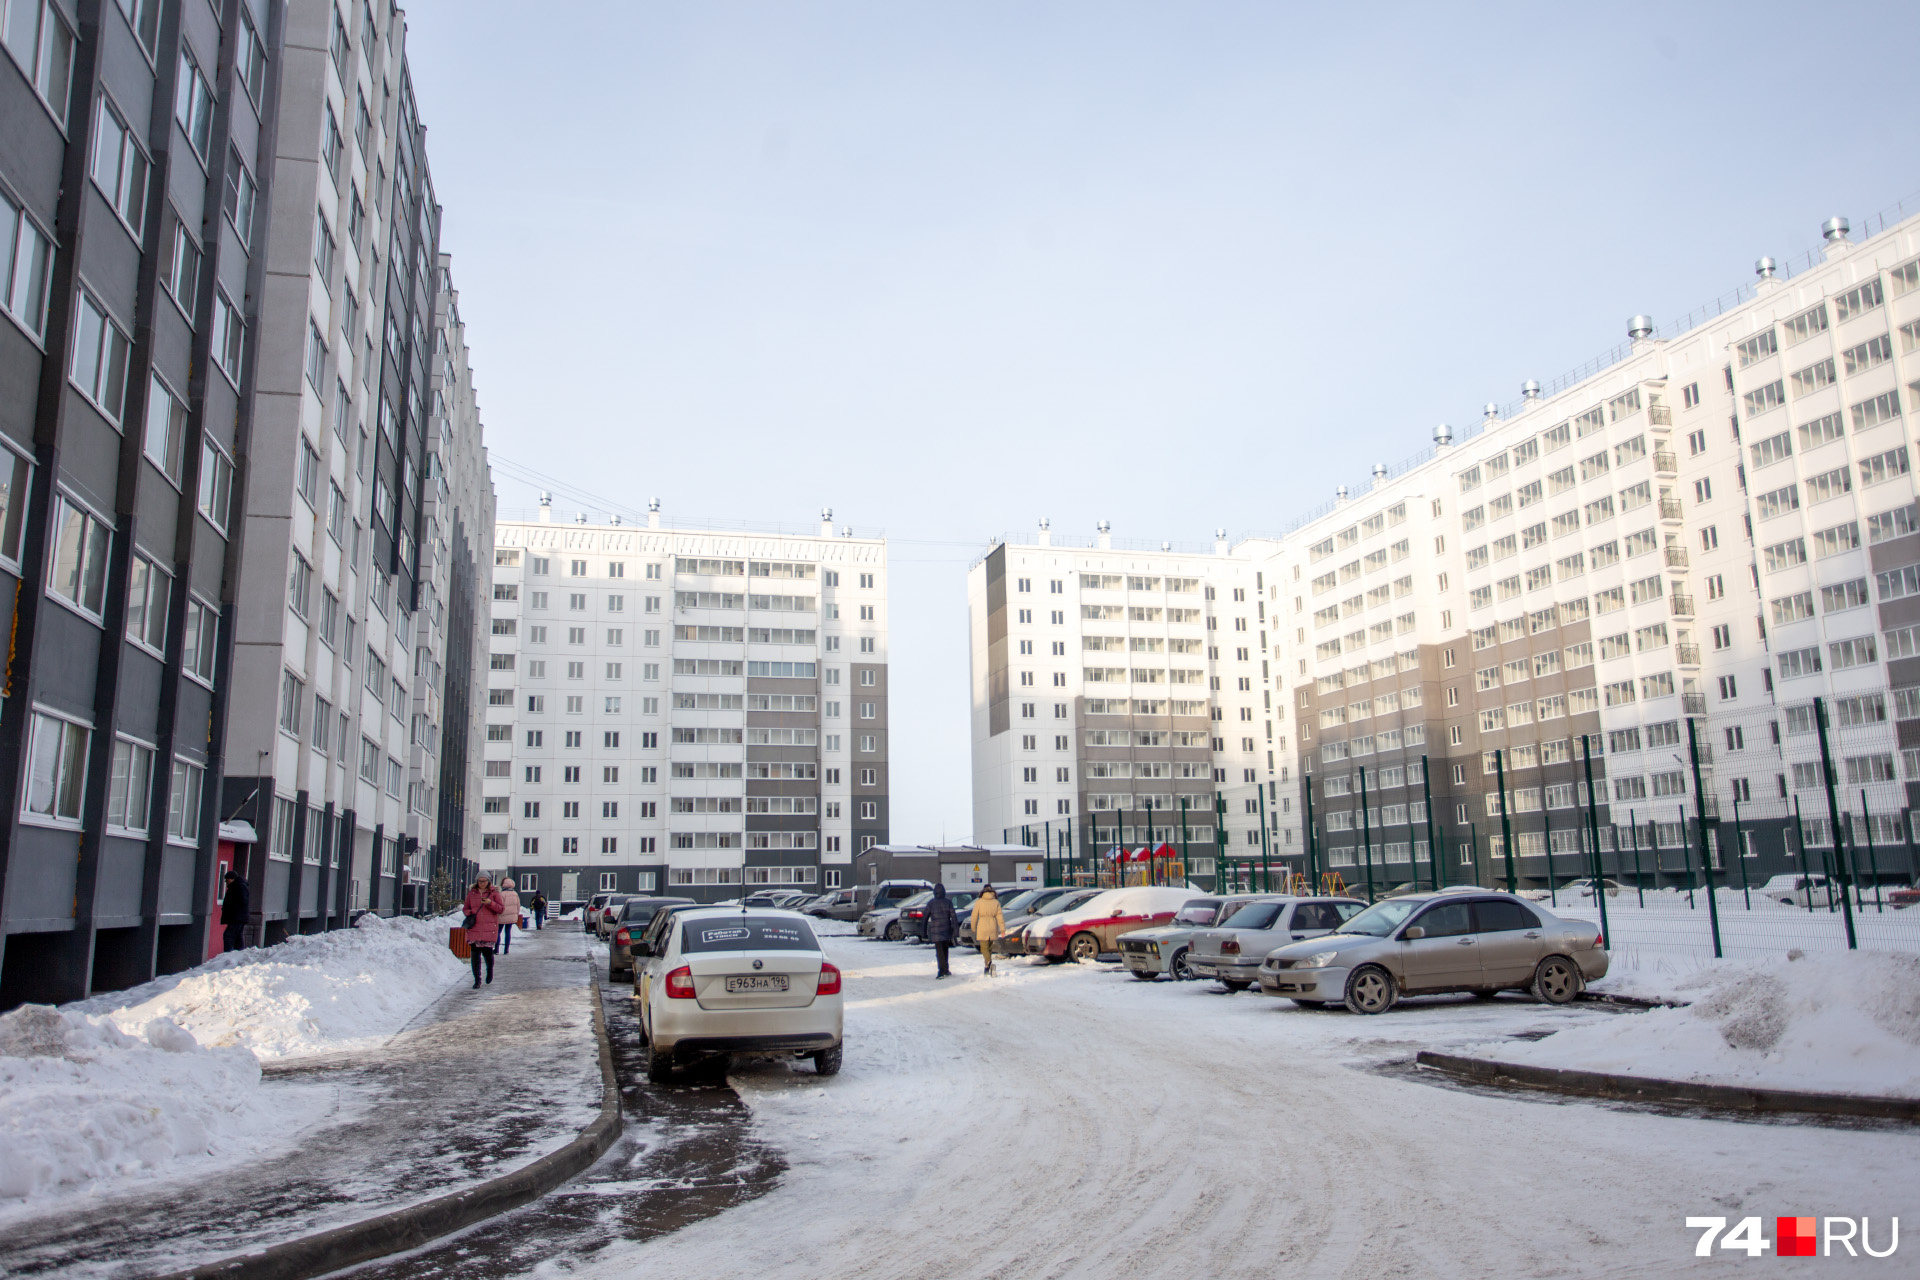 Самые маленькие квартиры в новостройках Челябинска расположены в Чурилово и Ленинском районе